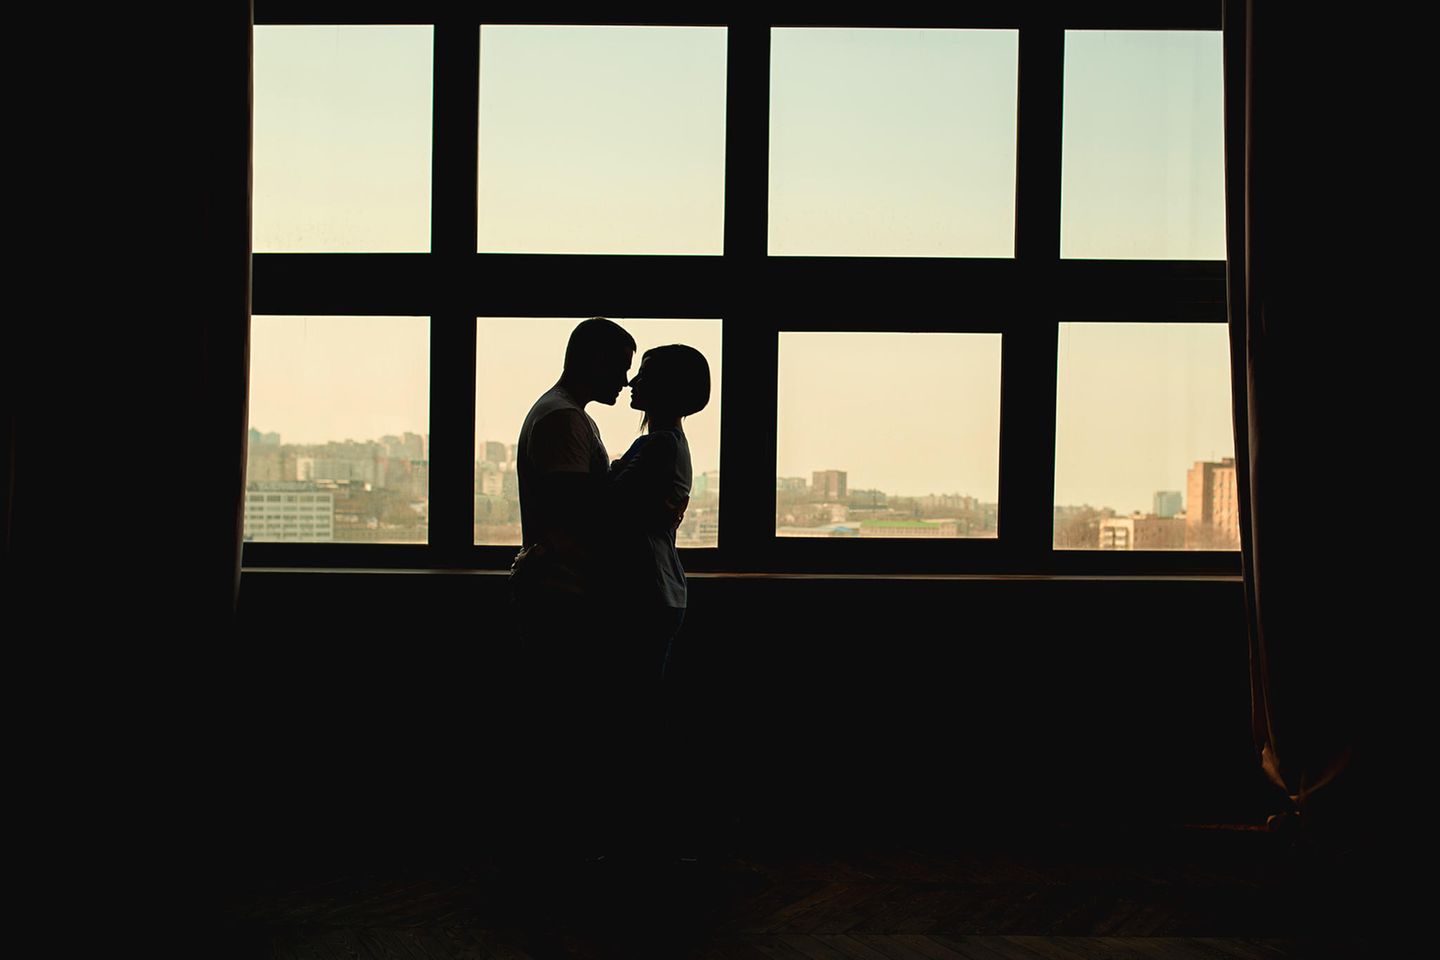 Liebesleben in Coronazeiten: Paar umarmt sich hinter Fensterscheiben